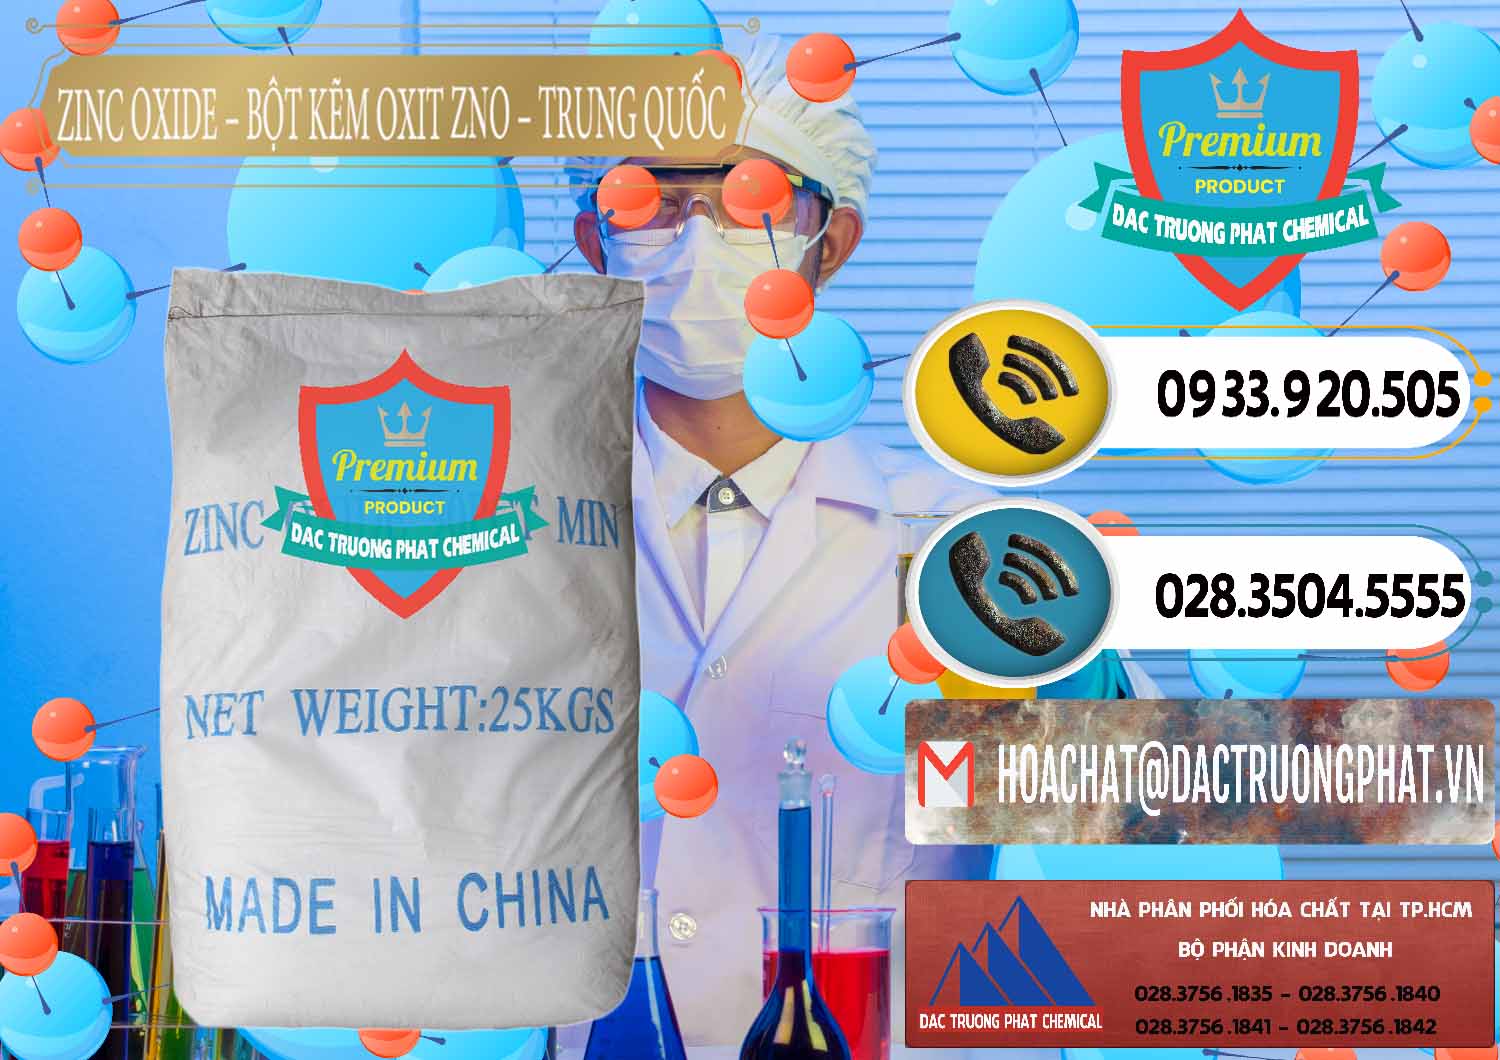 Đơn vị chuyên kinh doanh _ bán Zinc Oxide - Bột Kẽm Oxit ZNO Trung Quốc China - 0182 - Nơi phân phối _ bán hóa chất tại TP.HCM - hoachatdetnhuom.vn